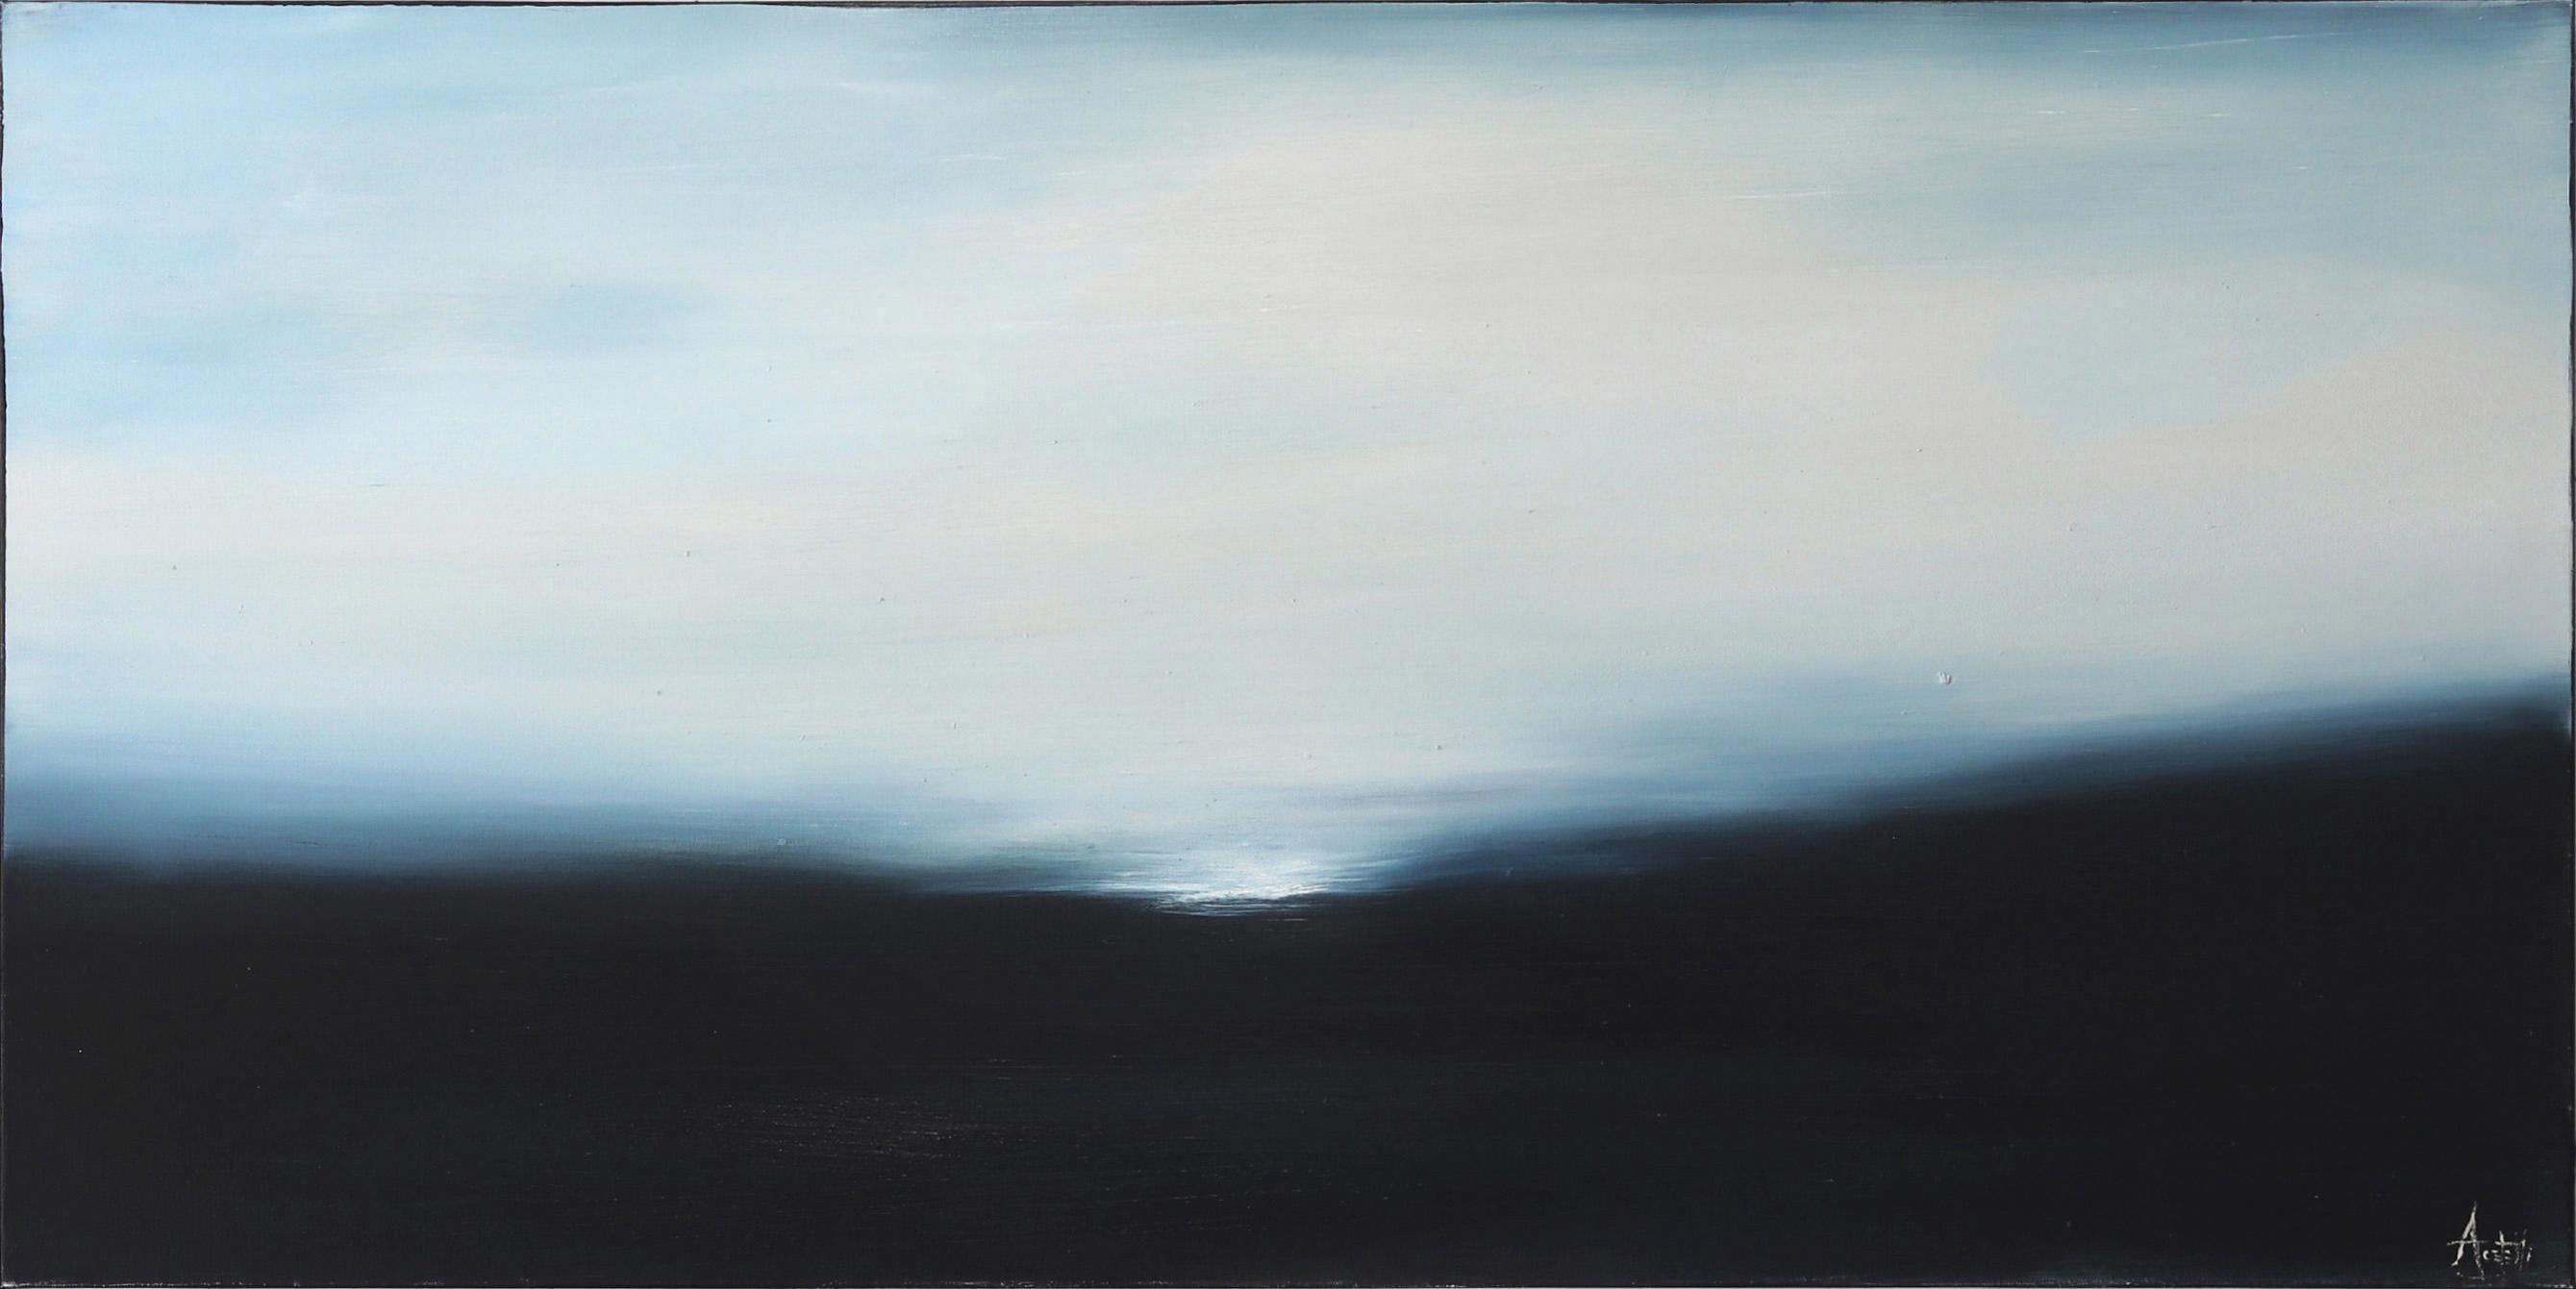 Landscape Painting Mark Acetelli - Solstice I, élégante peinture à l'huile de paysage abstrait bleu